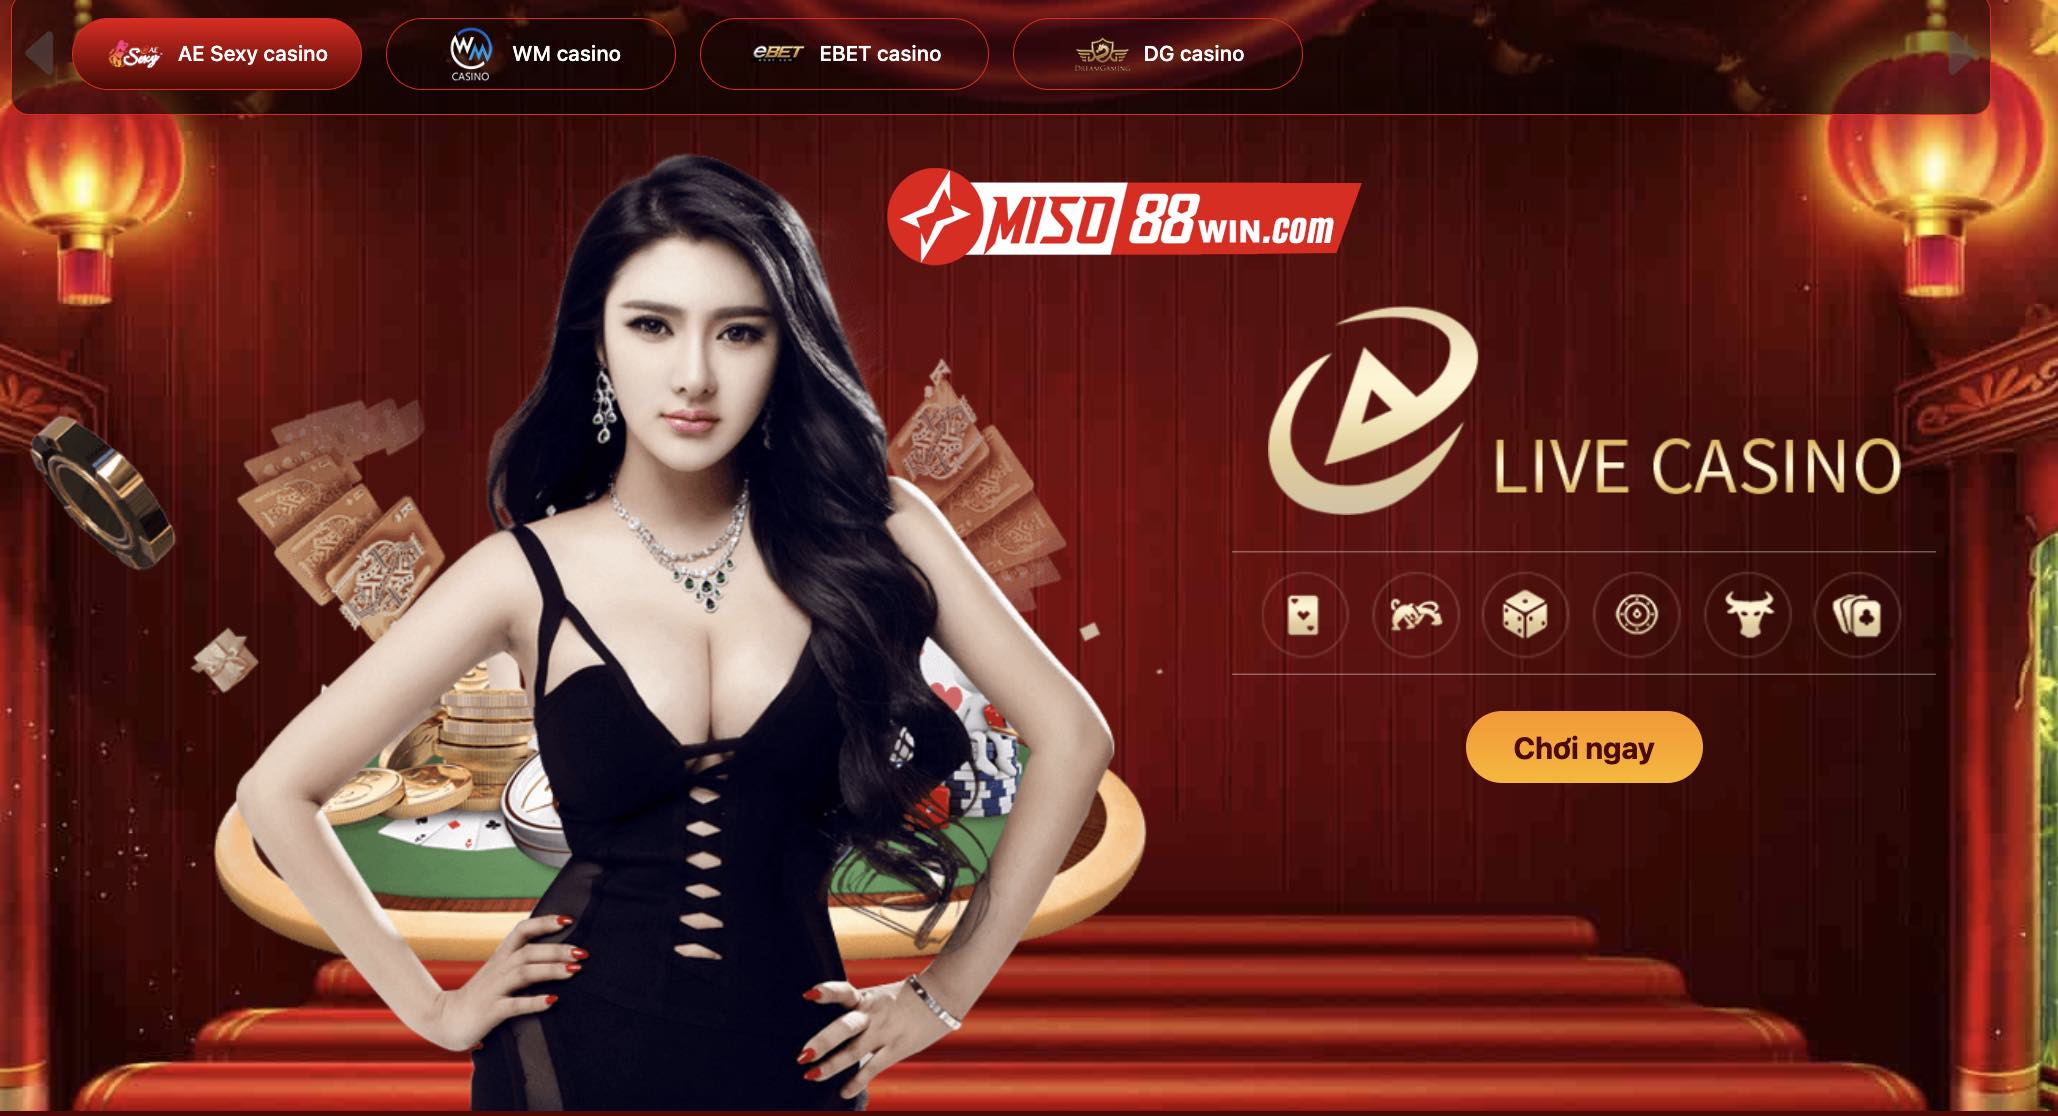 AE Live Casino Miso88